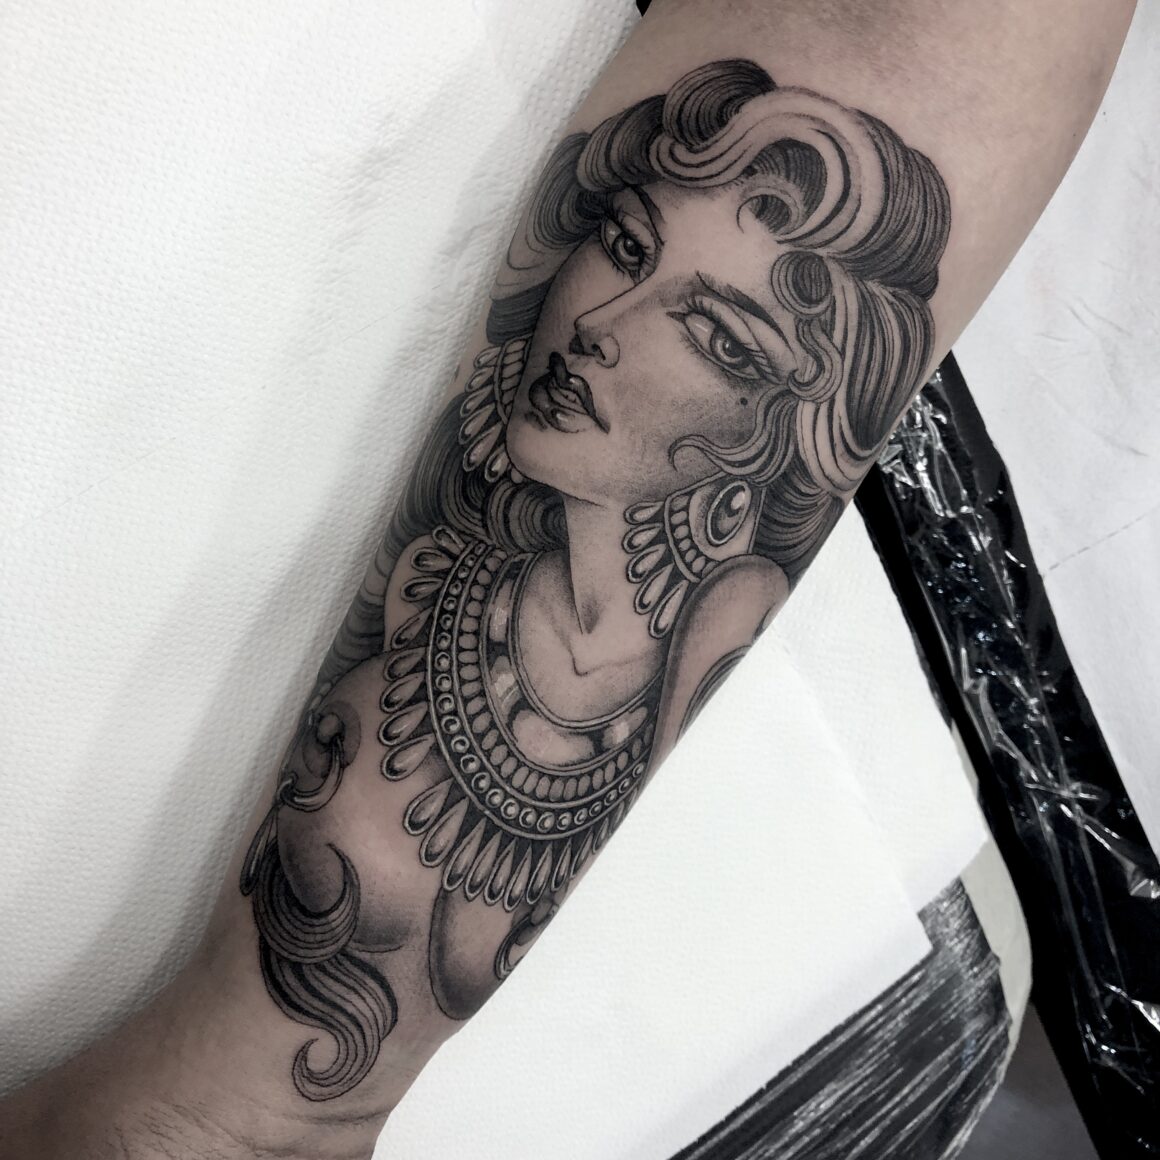 Diletta Lembo, Wildink Tattoo Crew, Napoli